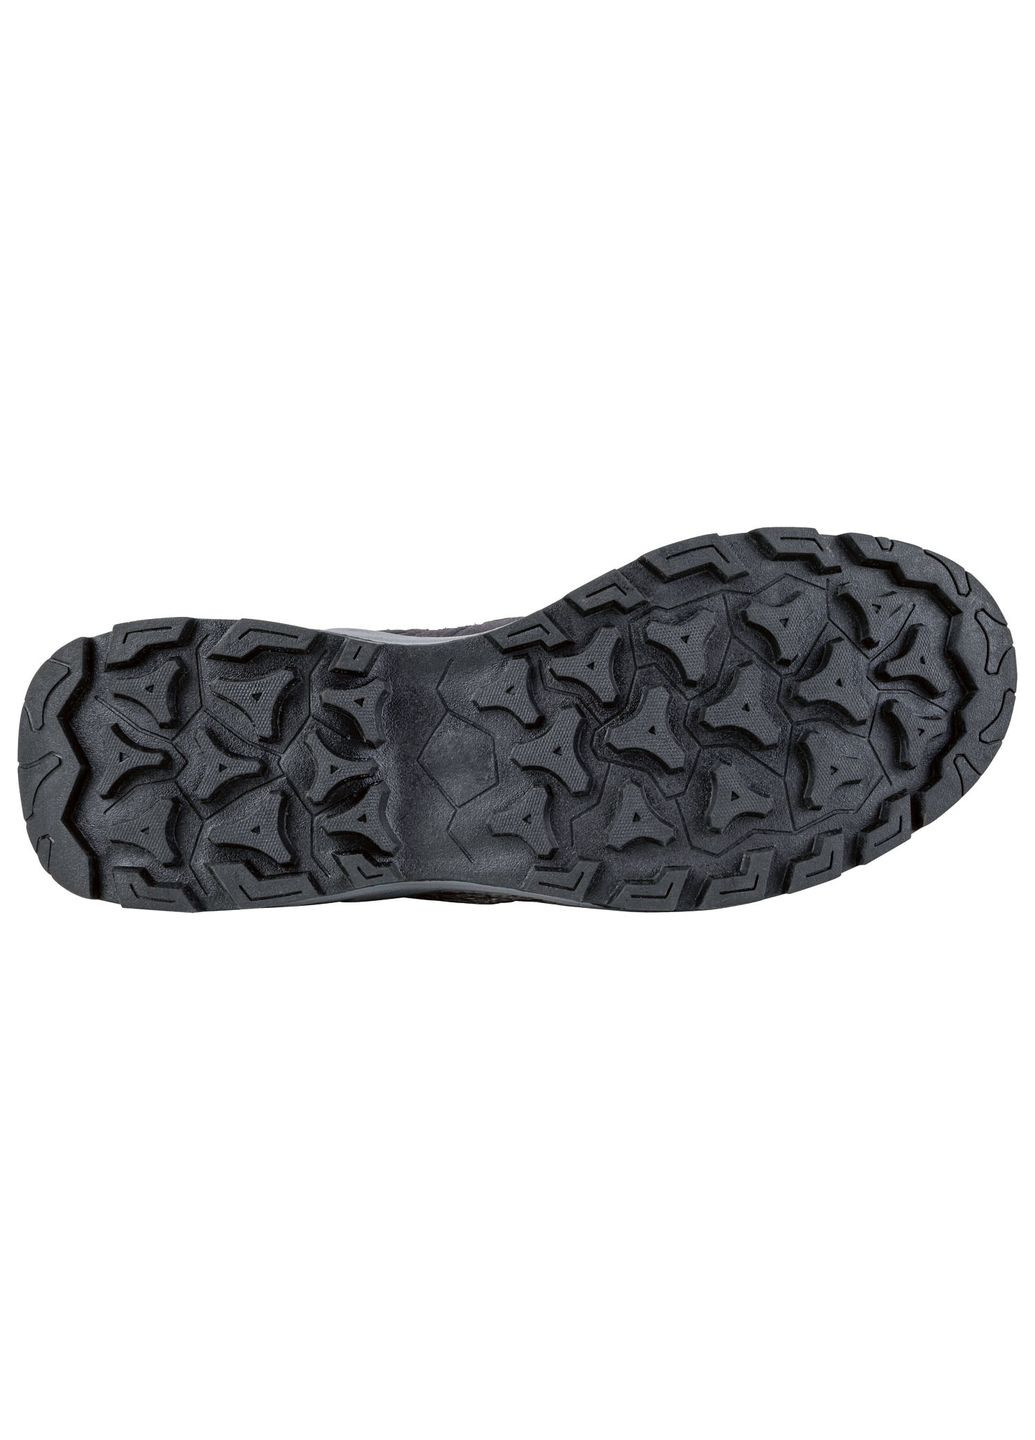 Серые осенние термо-ботинки мембранные водонепроницаемые для мужчины 370206 Crivit